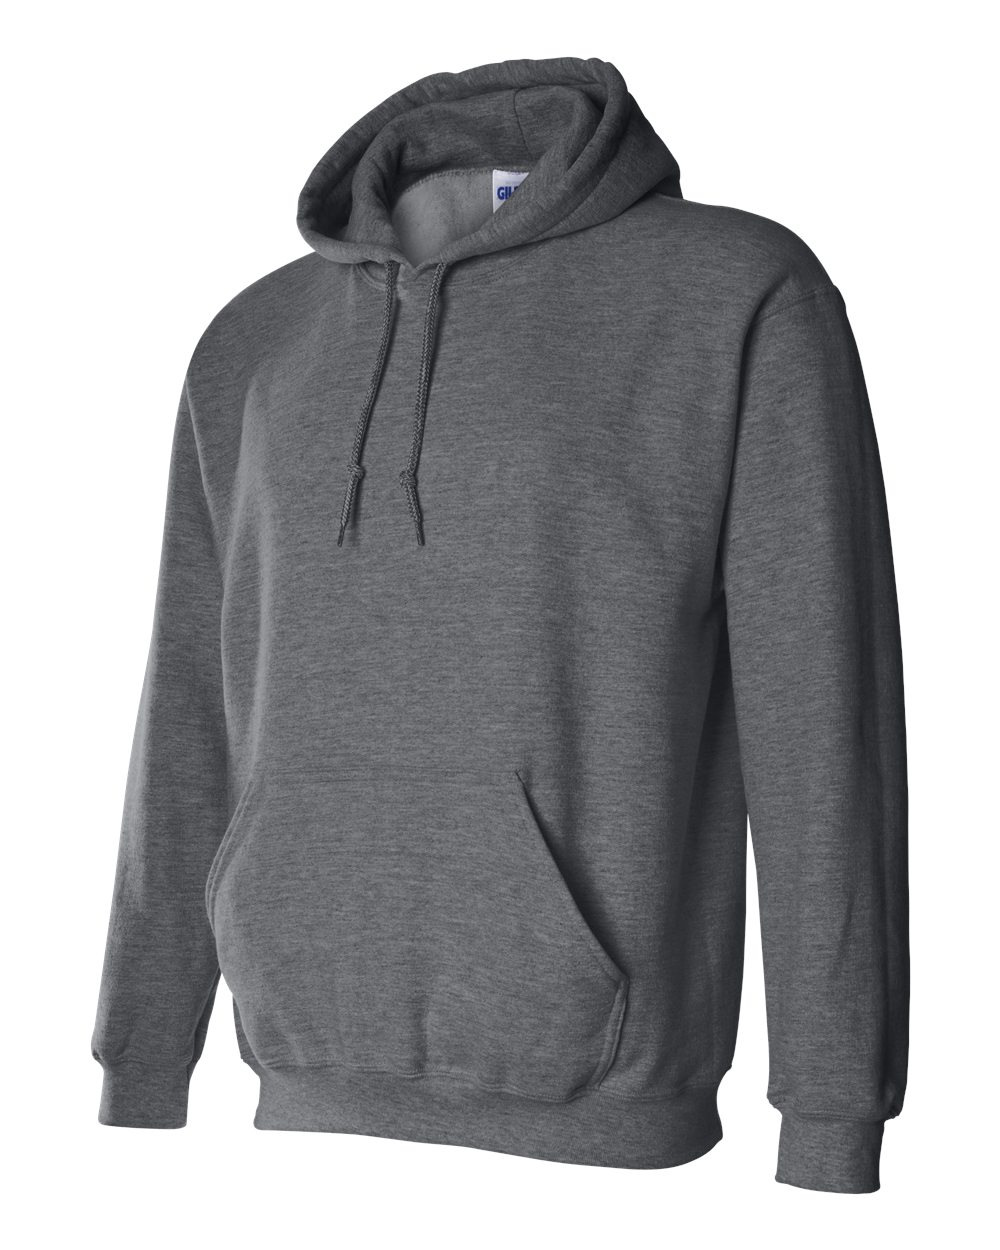 Gildan 18500 Heavy Blend Hooded Sweatshirt $12.64 - Men's ...